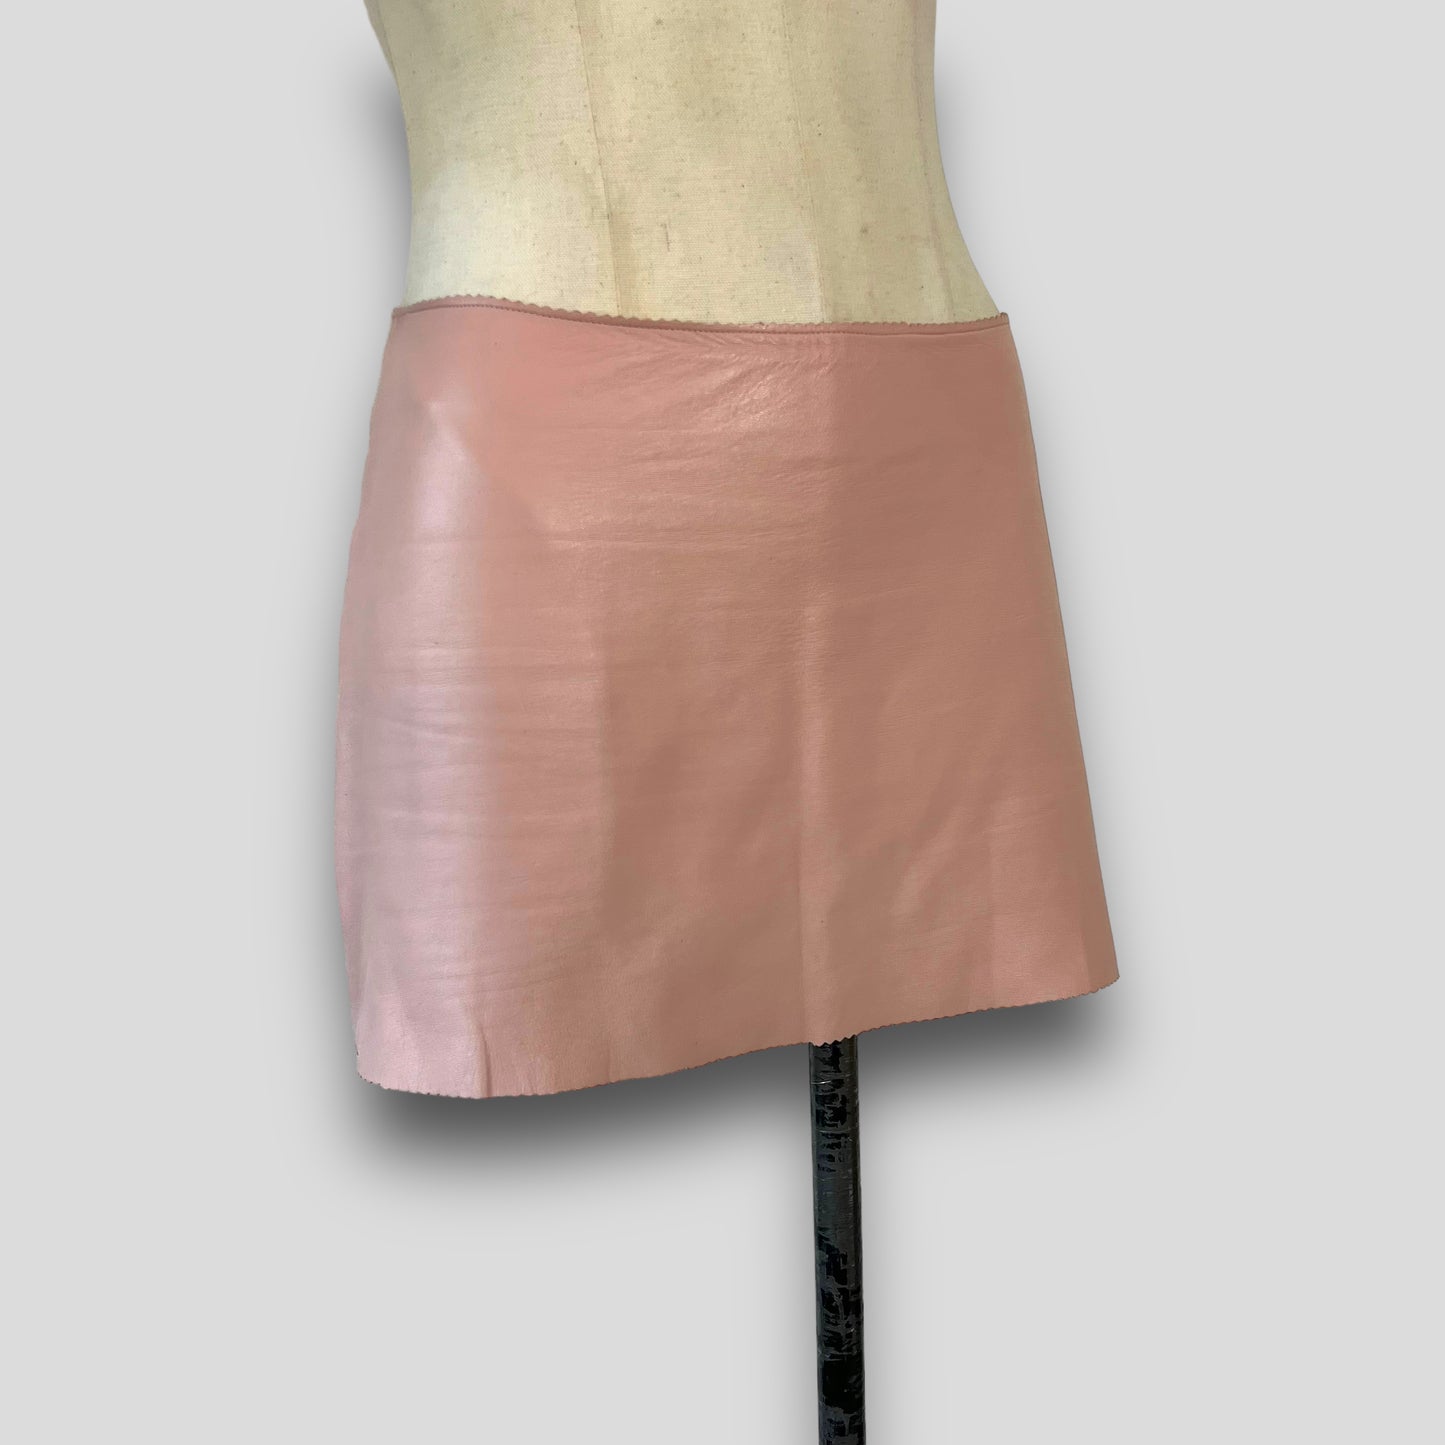 Miu Miu 1995 S/S mini leather skirt